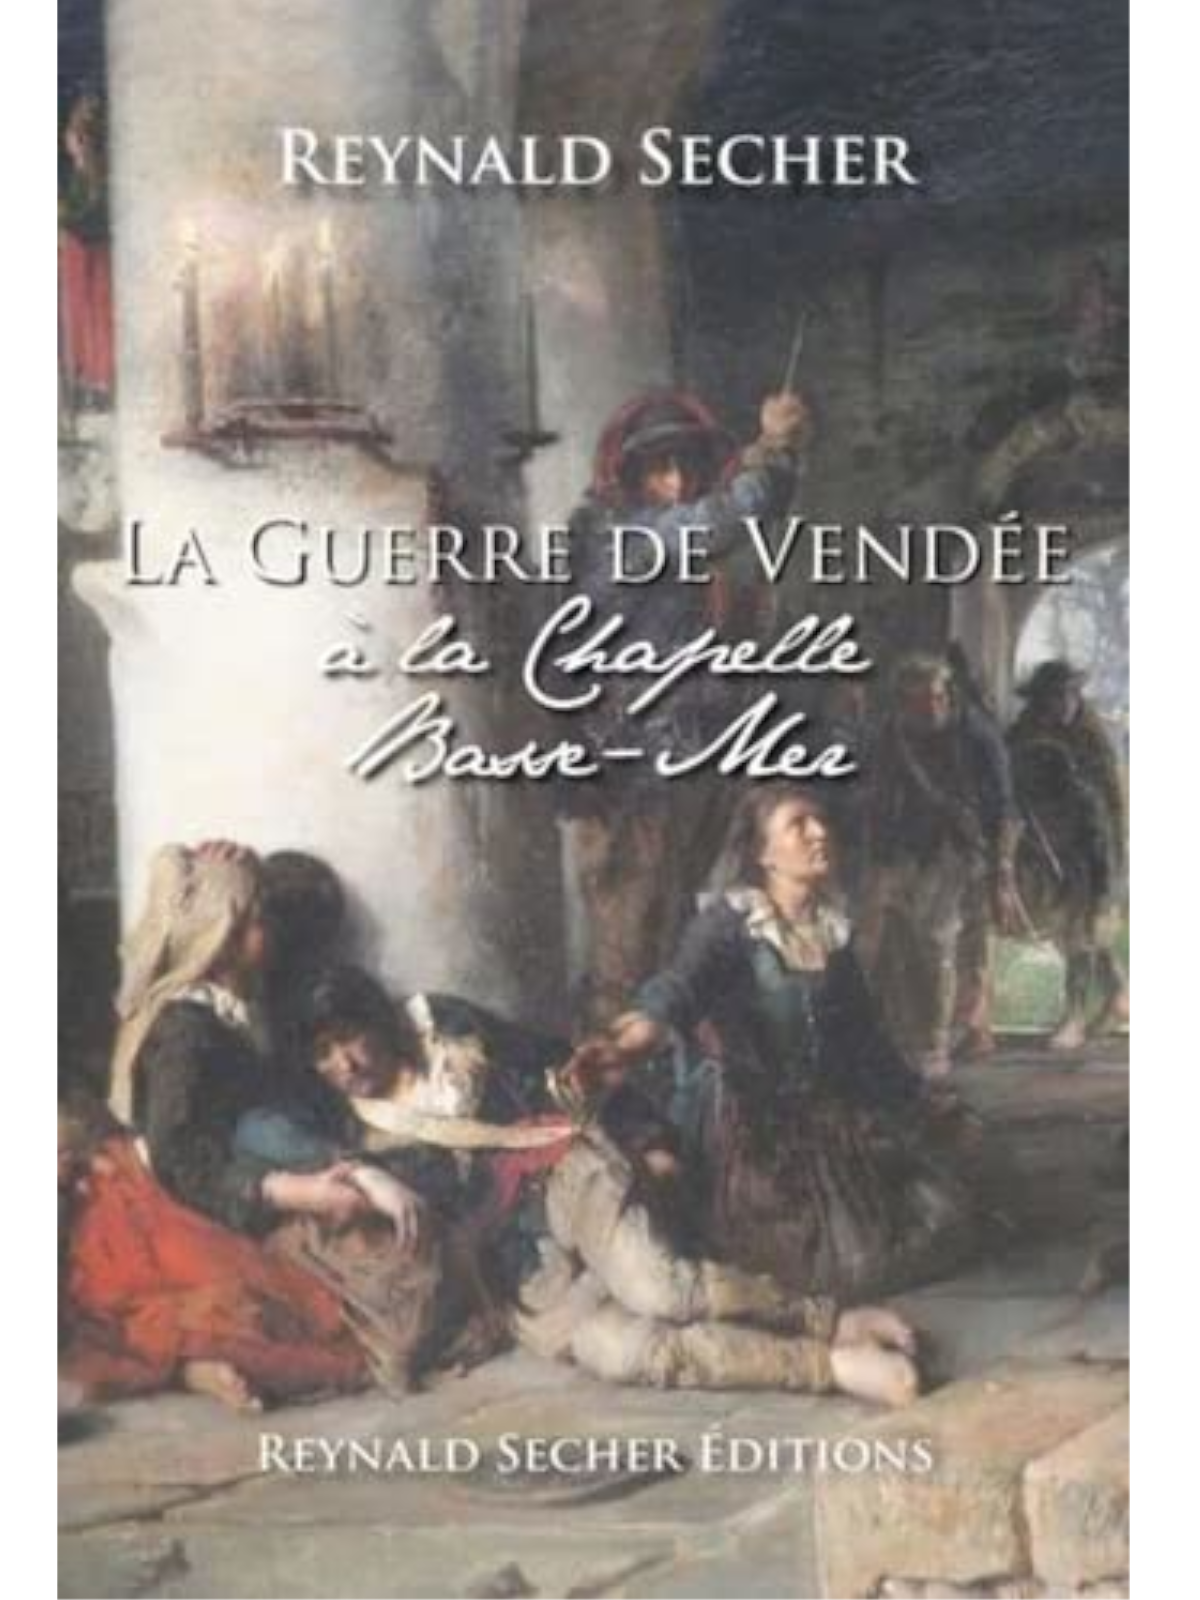 Reynald Secher : La guerre de Vendée a la chapelle Basse-Mer